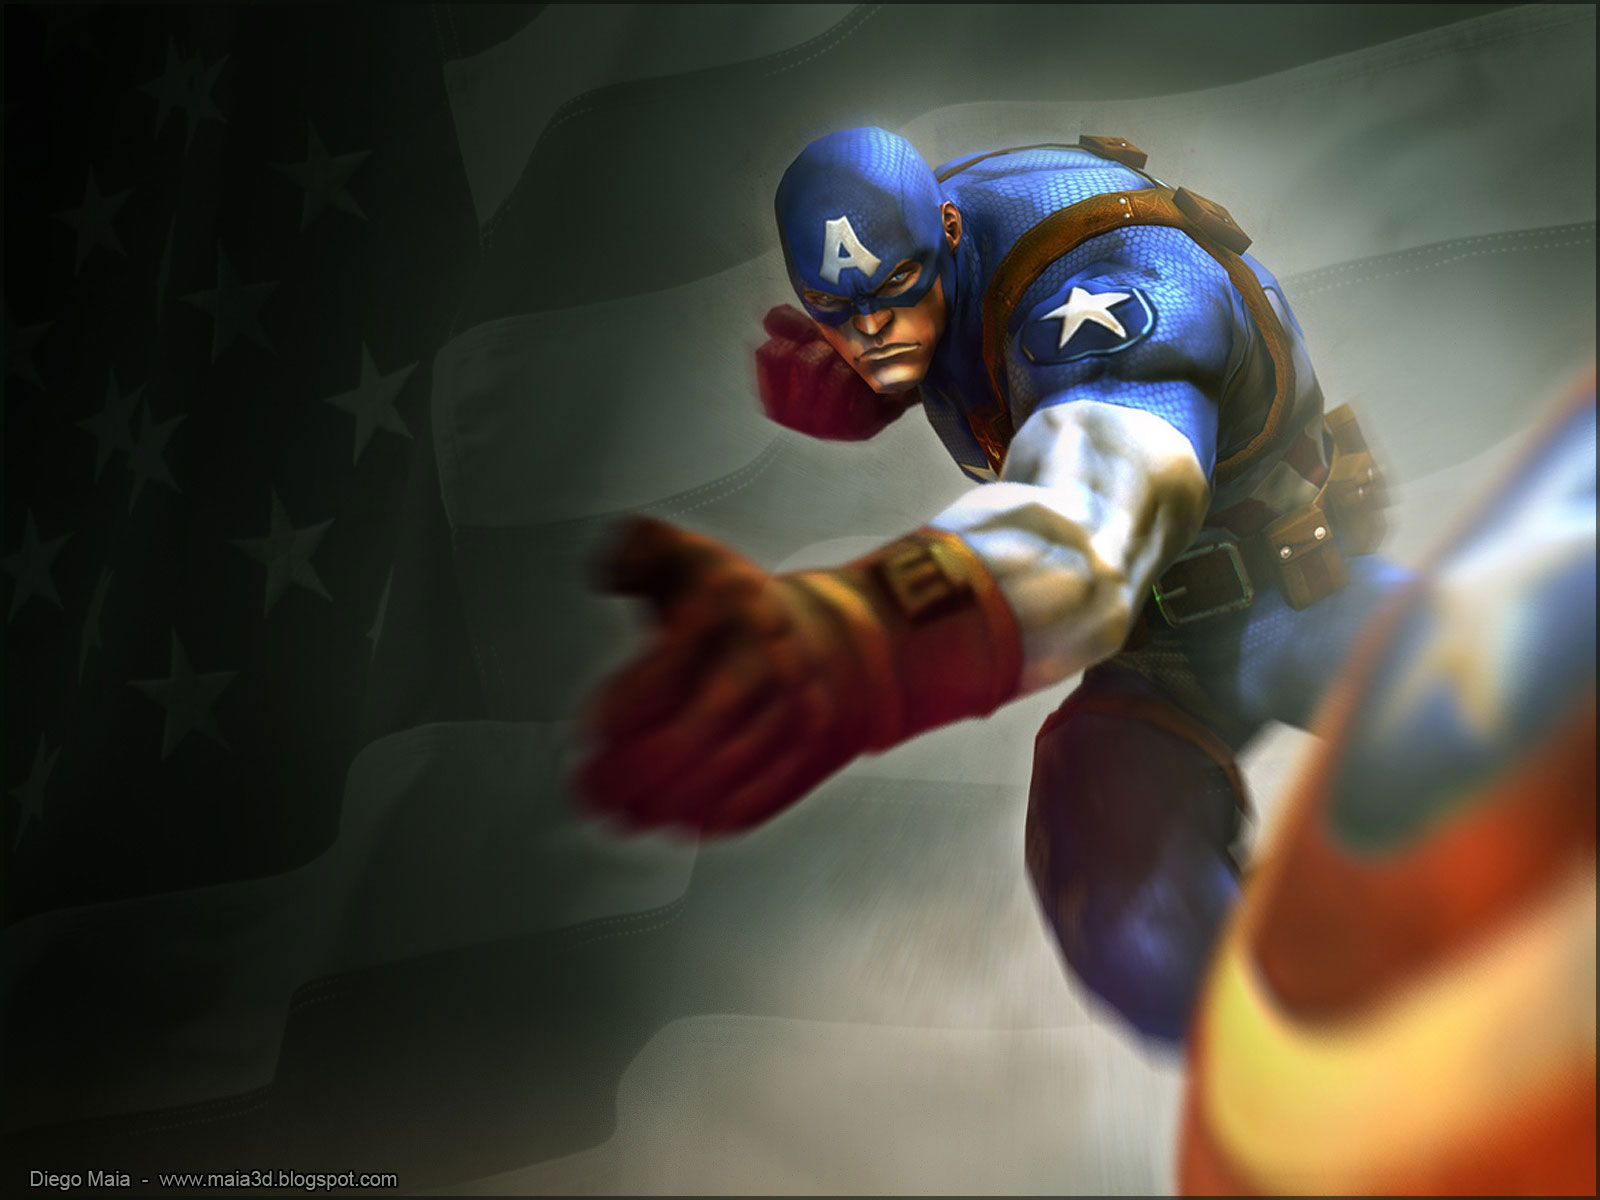 Descarga gratis la imagen Historietas, Capitan América en el escritorio de tu PC